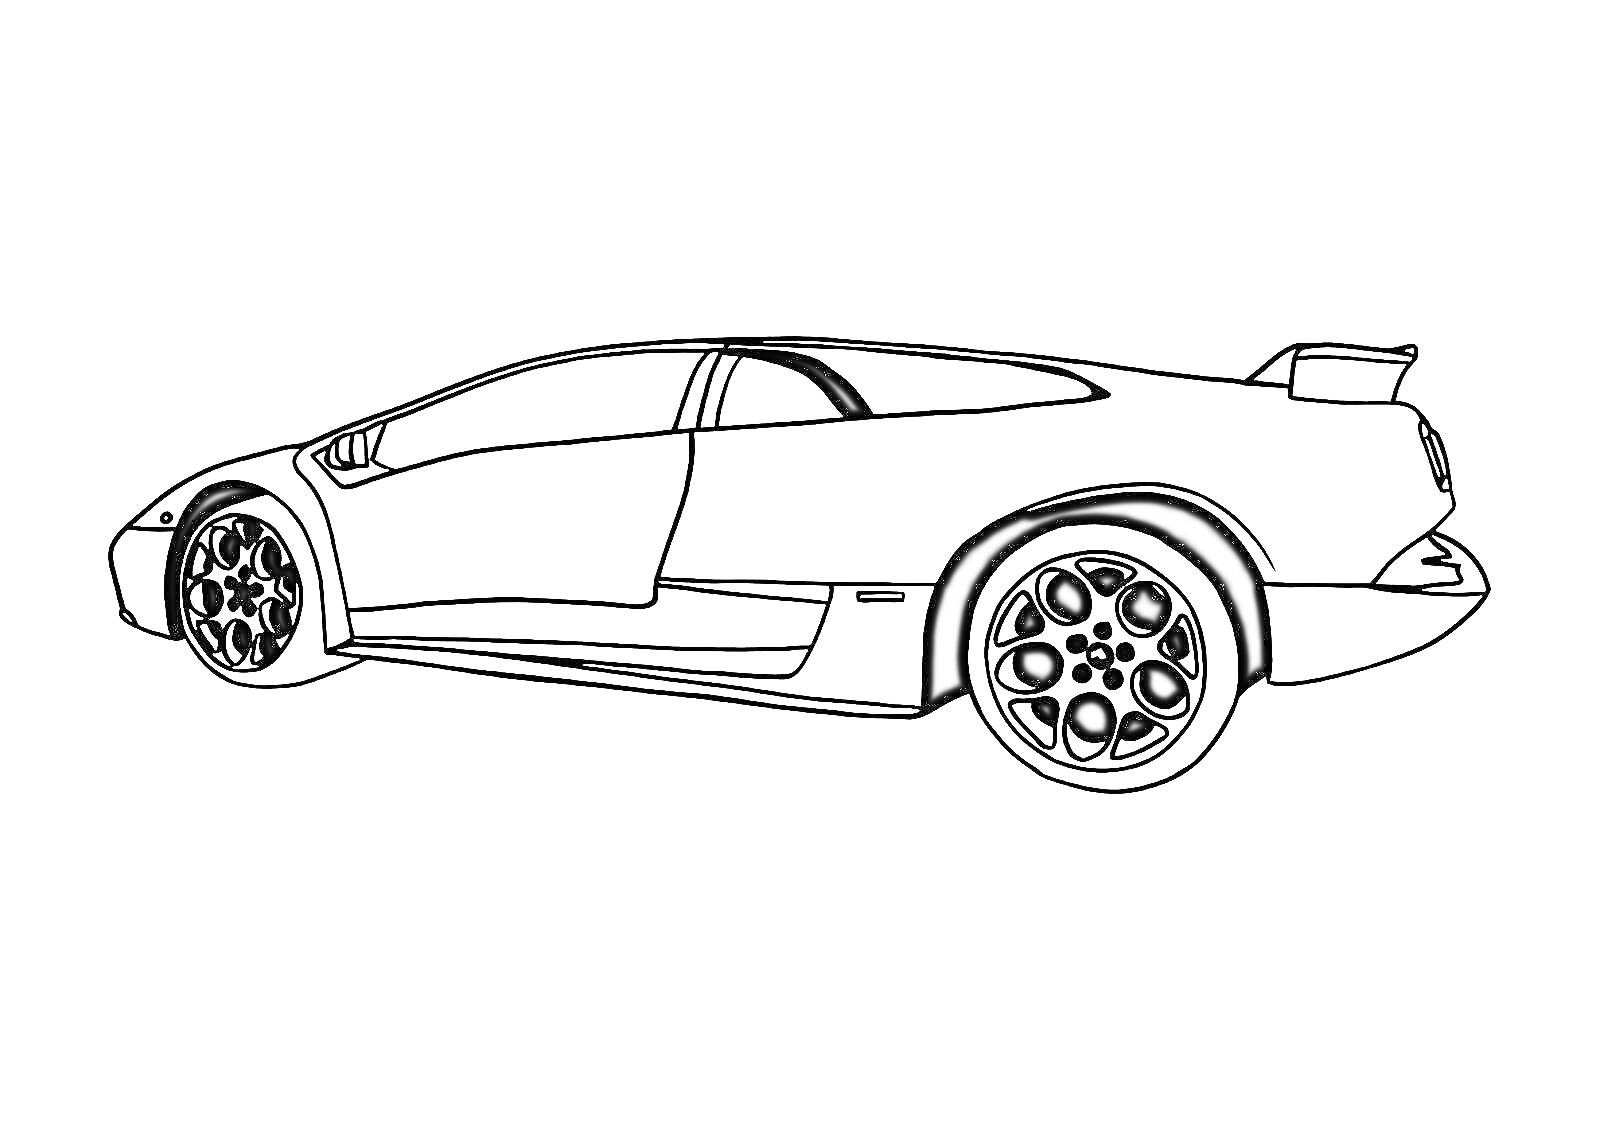 Раскраска Спортивный автомобиль Ламборджини с характерным спойлером, колёсами и аэродинамическими элементами